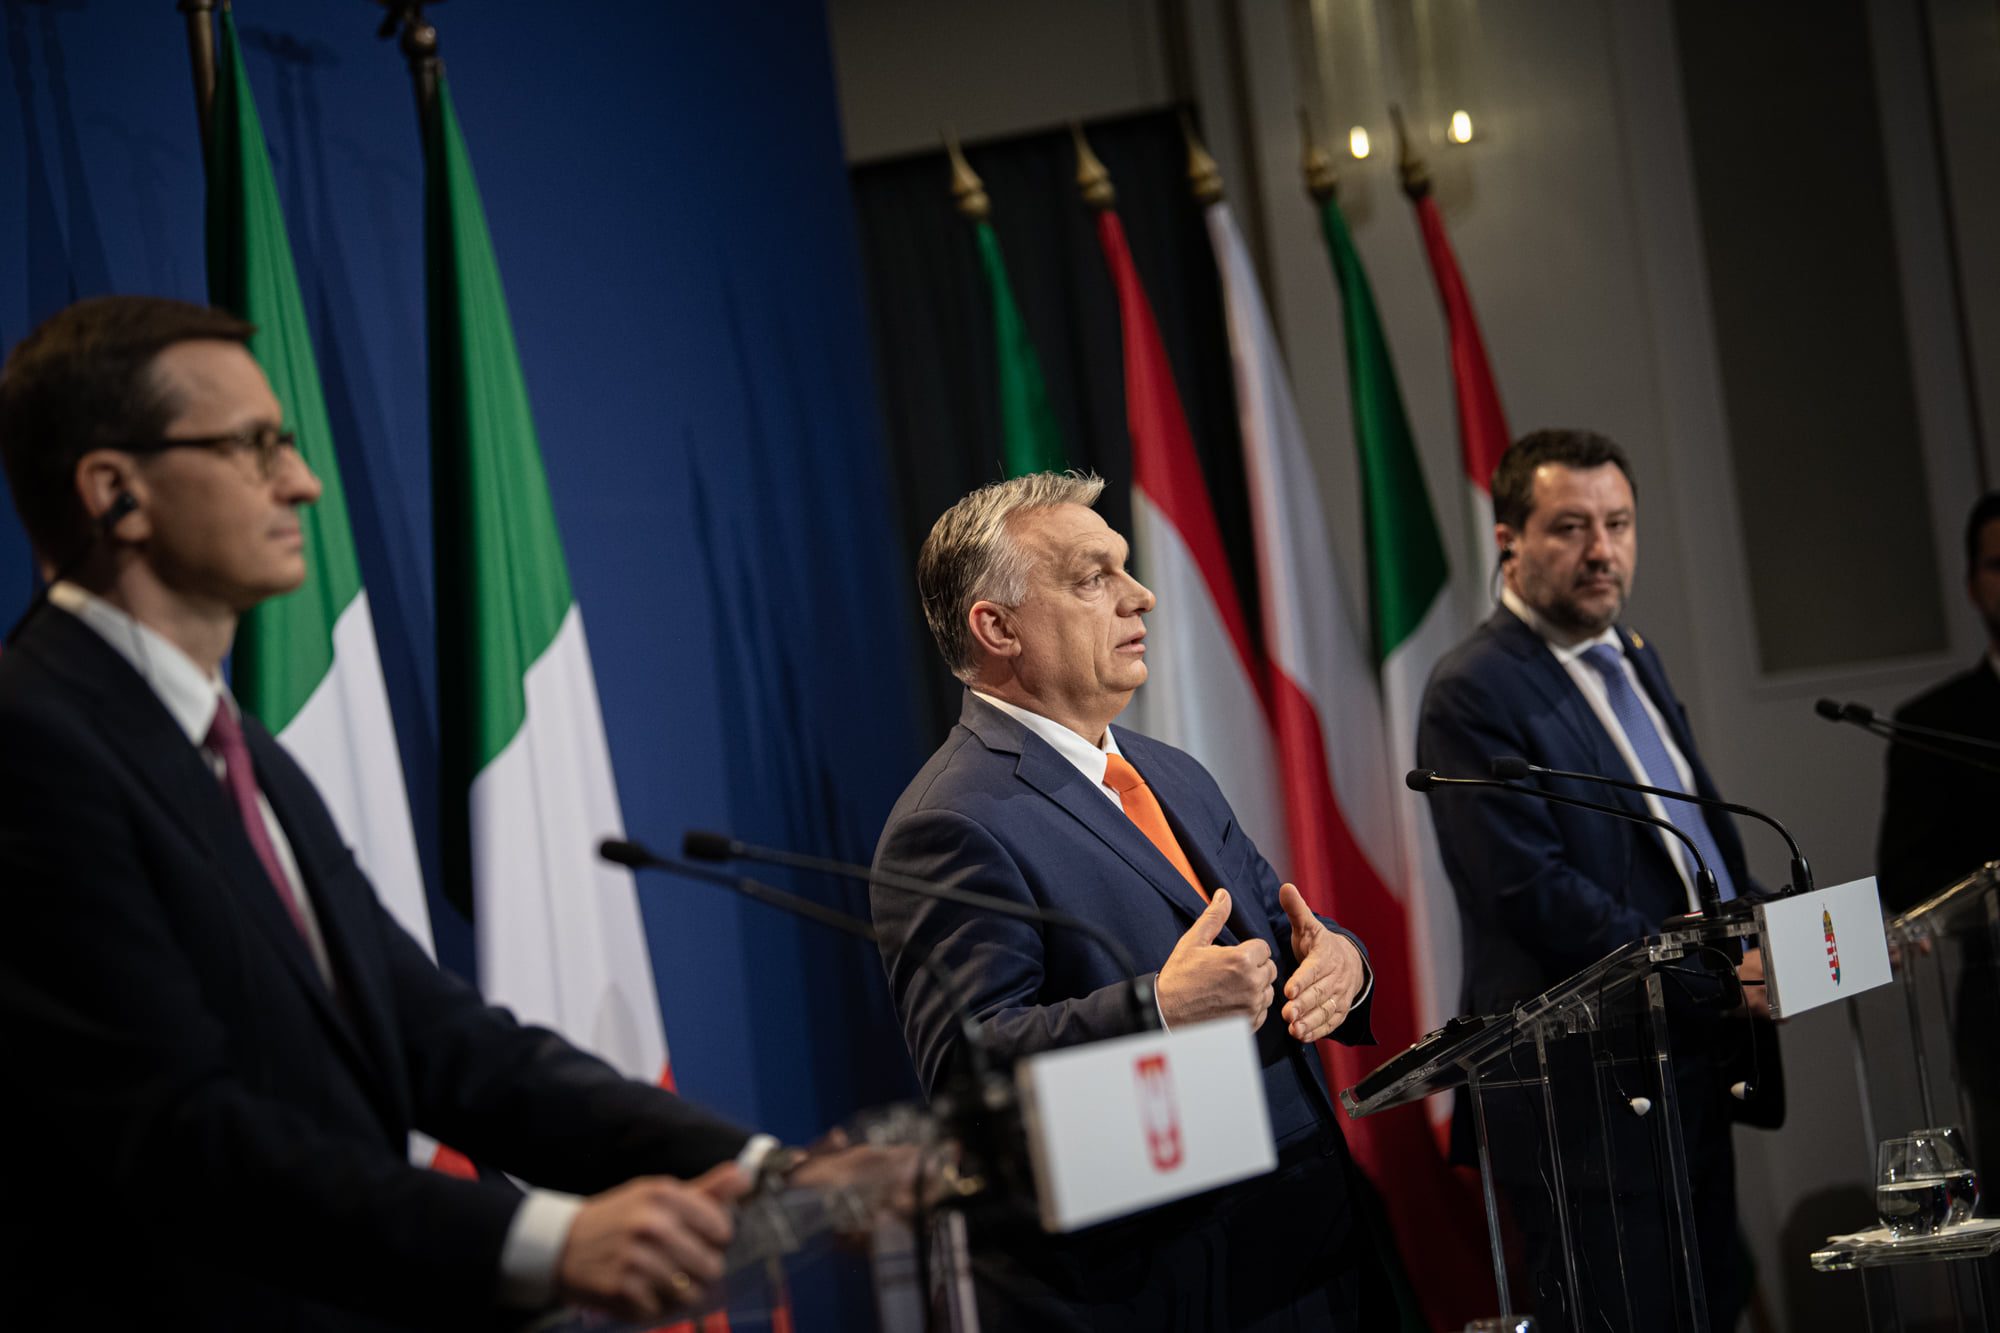 Viktor Orbán: Wir wollen eine europäische Renaissance!